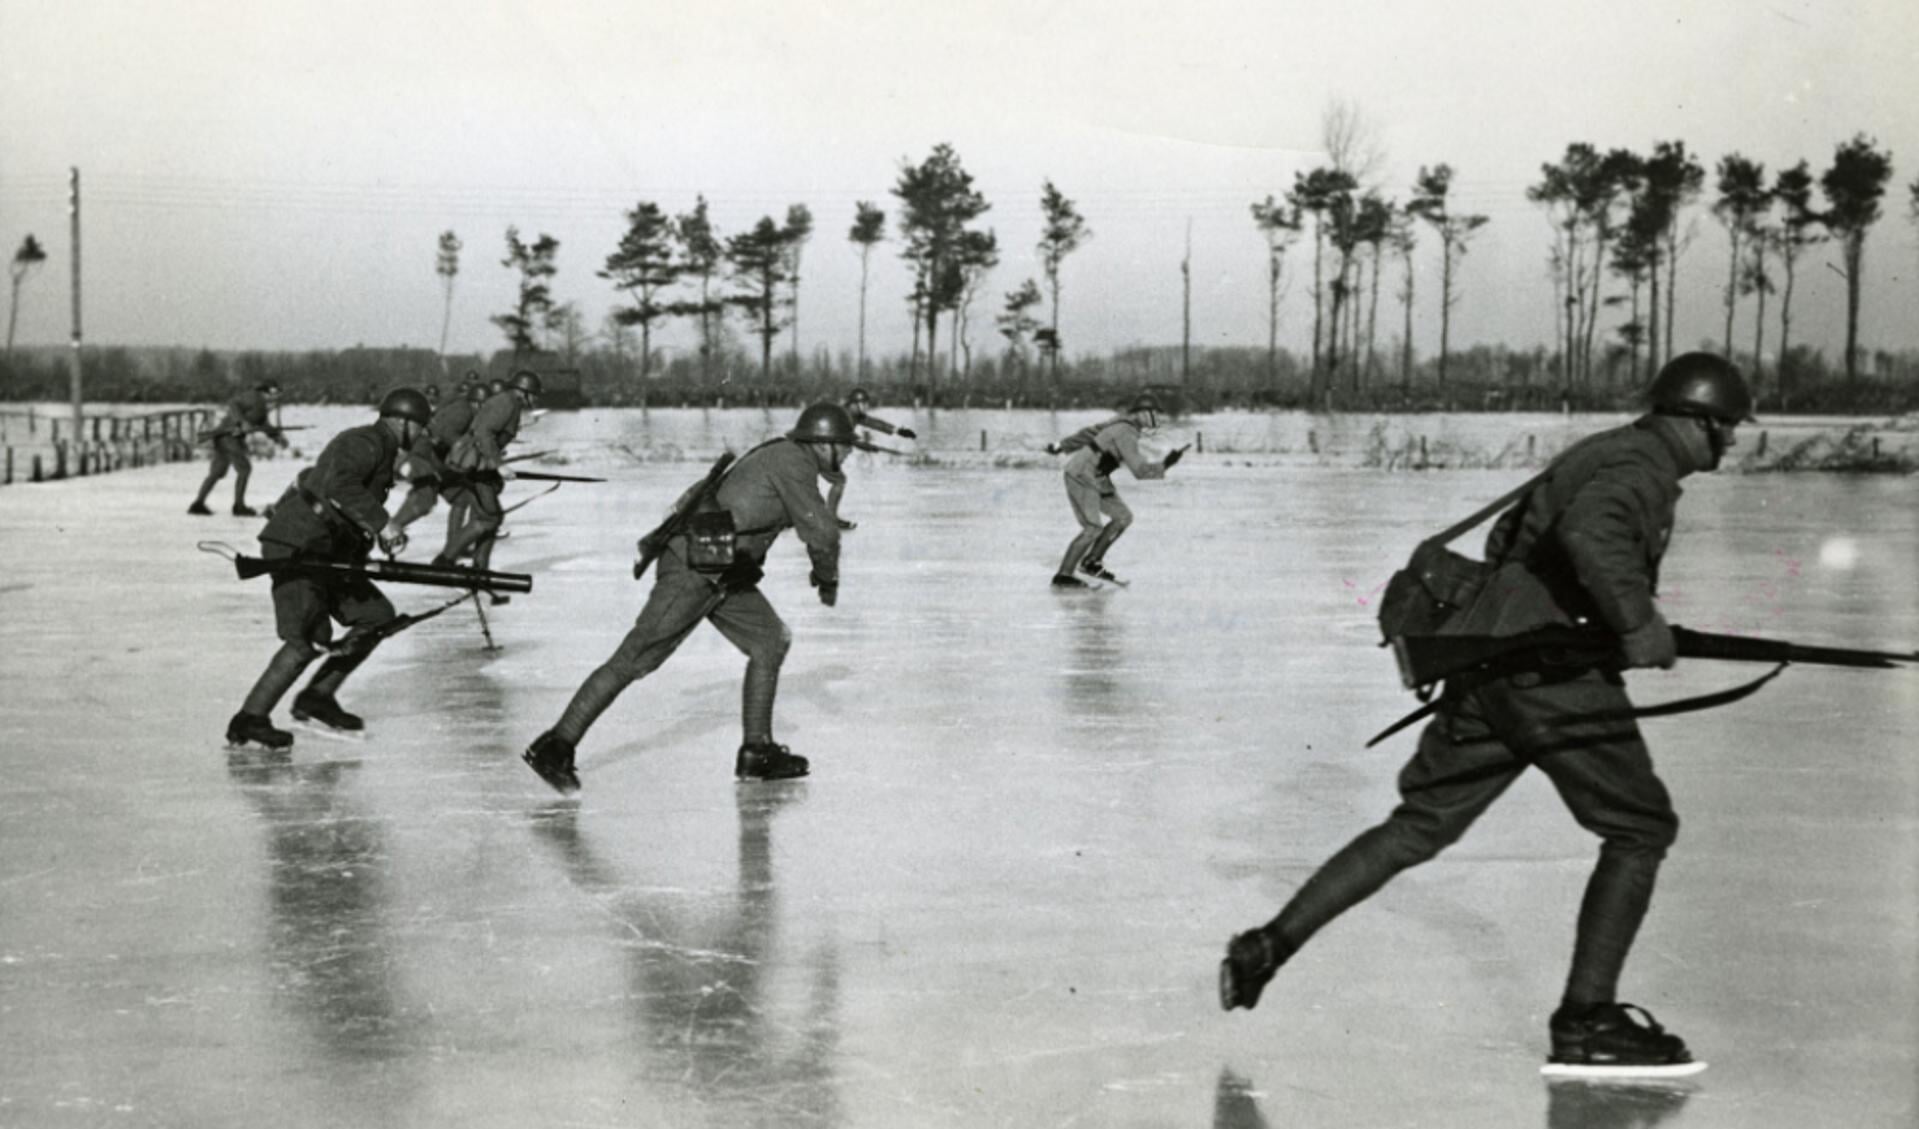 Foto 1: Als onderdeel van de mobilisatie worden gebieden onder water gezet, zoals hier in de omgeving van Leusden. Op 11 januari 1940 oefenen Nederlandse militairen op de schaats met wapens bi de Vijfde Kom aan het Valleikanaal, ook wel de Asschatterkom genoemd.